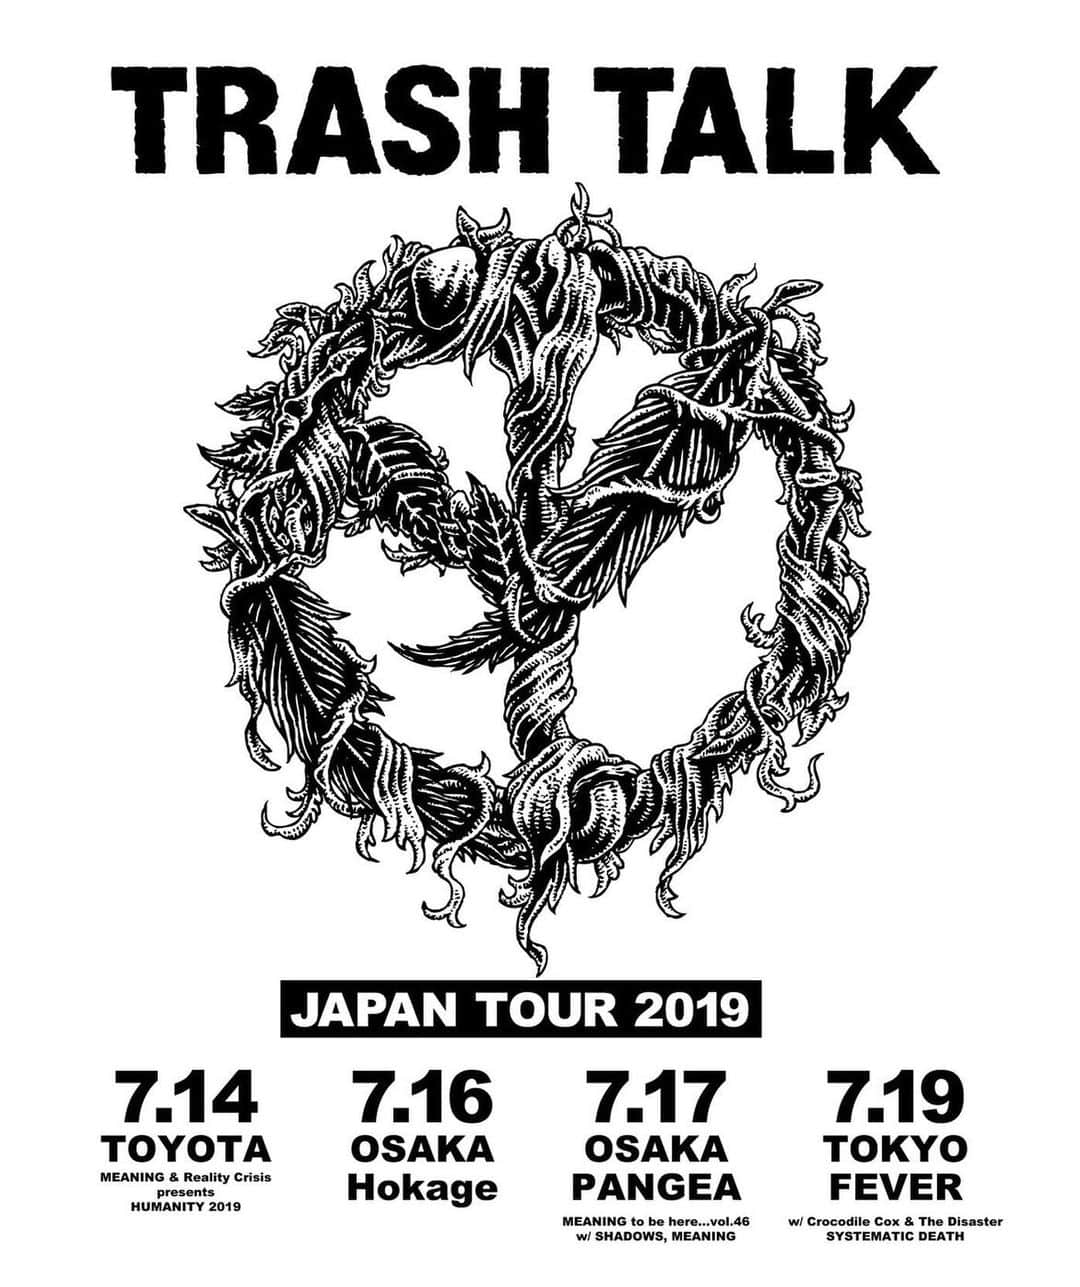 日高隼人のインスタグラム：「【TRASH TALK Japan Tour 2019】 ※MEANINGの出演は14日と17日となります ▪️7.14 愛知県  トヨタスタジアム外周 特設ステージ MEANING & Reality Crisis presents "HUMANITY 2019" w/ FORWARD, 九狼吽、ENTH、NoLA, SHADOWS, WARHEAD, SHANK,GARLIC BOYS, GYRO, BLACK GANION, MEANING, TURTLE ISLAND, BACK LIFT, REALITY CRISIS 🎟 e + . . . ▪️7.16 大阪 心斎橋 火影 20:30 START ※ワンマン(公演） 🎟メール予約 日付、名前、枚数を明記の上hokage-osaka@hotmail.co.jp までメール下さい . . . ▪️7.17 大阪 心斎橋 PANGEA w/ MEANING, SHADOWS 🎟 e＋、ローチケ、チケットぴあ . . . ▪️7.19 東京 新代田 FEVER w/ SYSTEMATIC DEATH, Crocodile Cox & The Disaster、and more... 🎟 e＋ . . . ※ for the oversea punks, text your name, date of the show, and number of tickets to meaning_info@hotmail.co.jp and your reservation will be completed. Show up to the door and tell your name.」